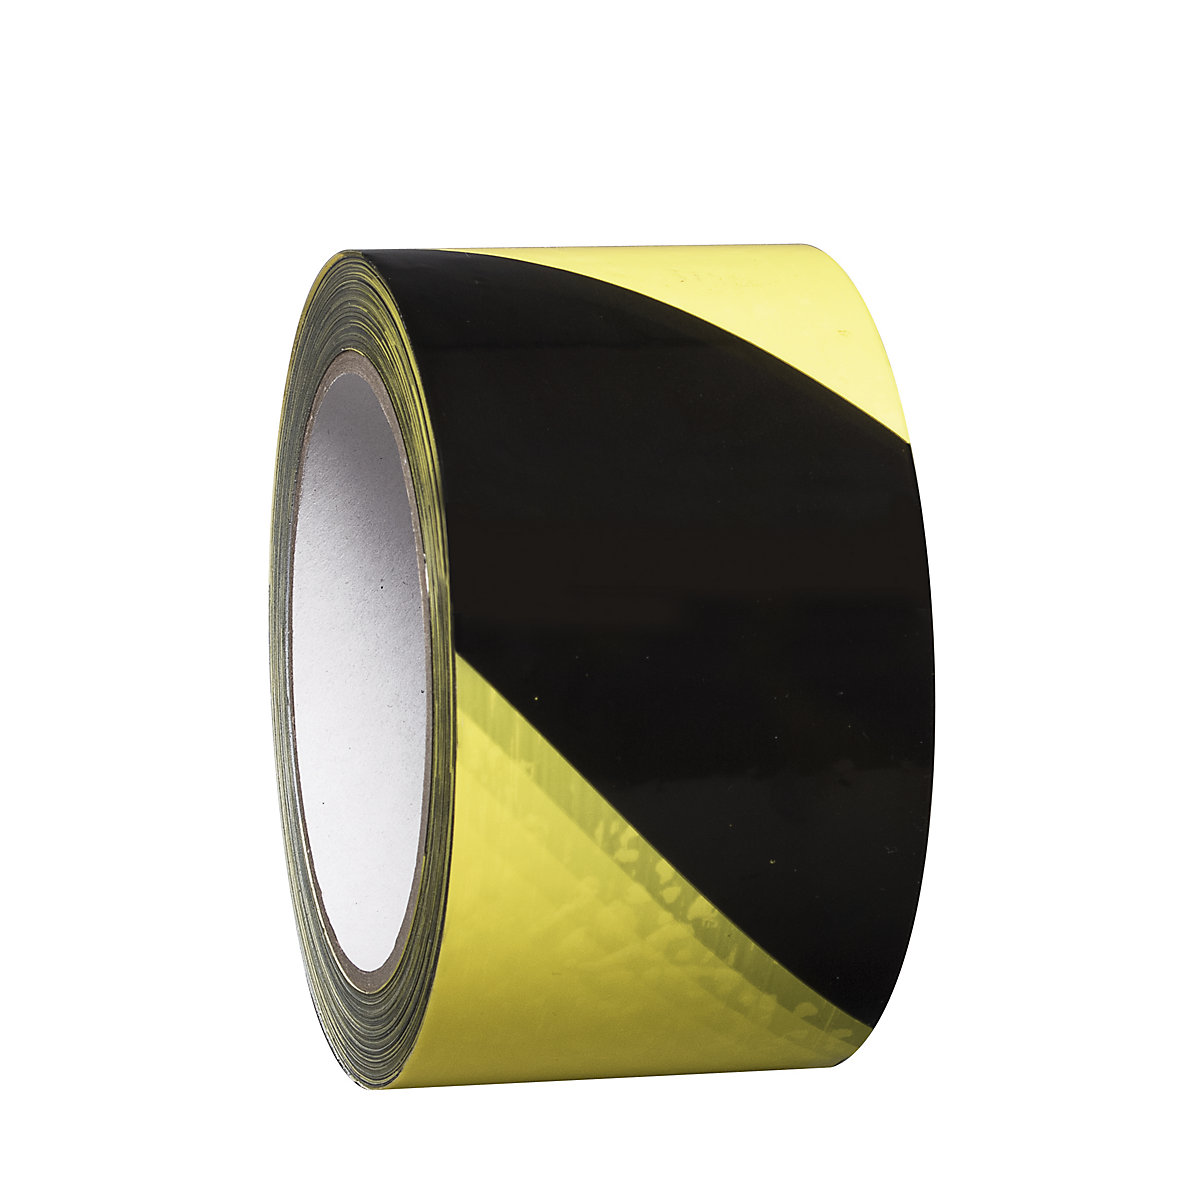 Bodenmarkierungsband aus Vinyl, zweifarbig, Breite 75 mm, gelb / schwarz, VE 8 Rollen-6